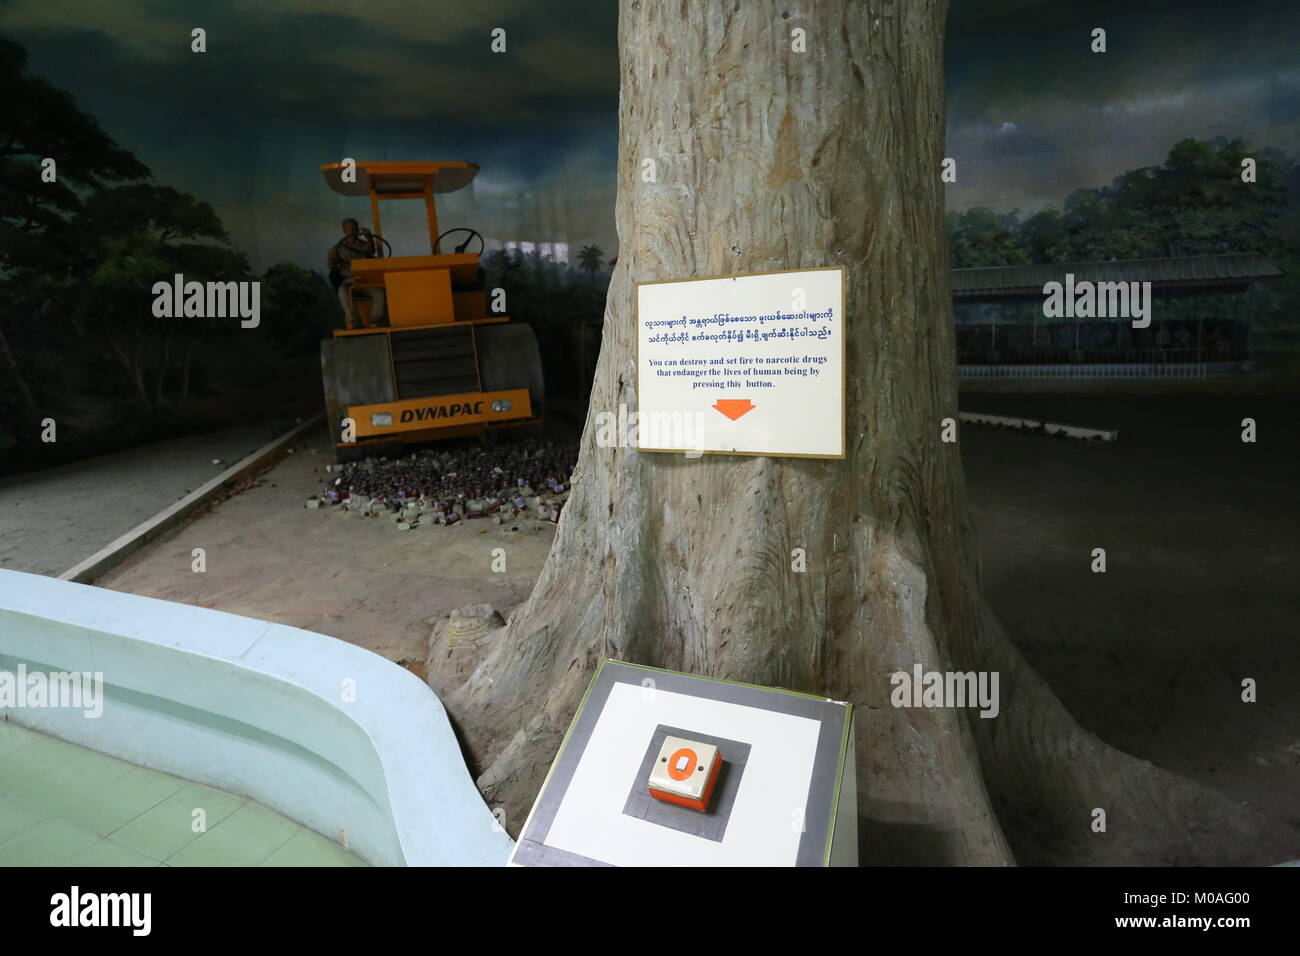 Das Museum in Yangon ist mit Anzeige von Warnungen über die Gefahren und Risiken der Drogenabhängigkeit gefüllt. Stockfoto